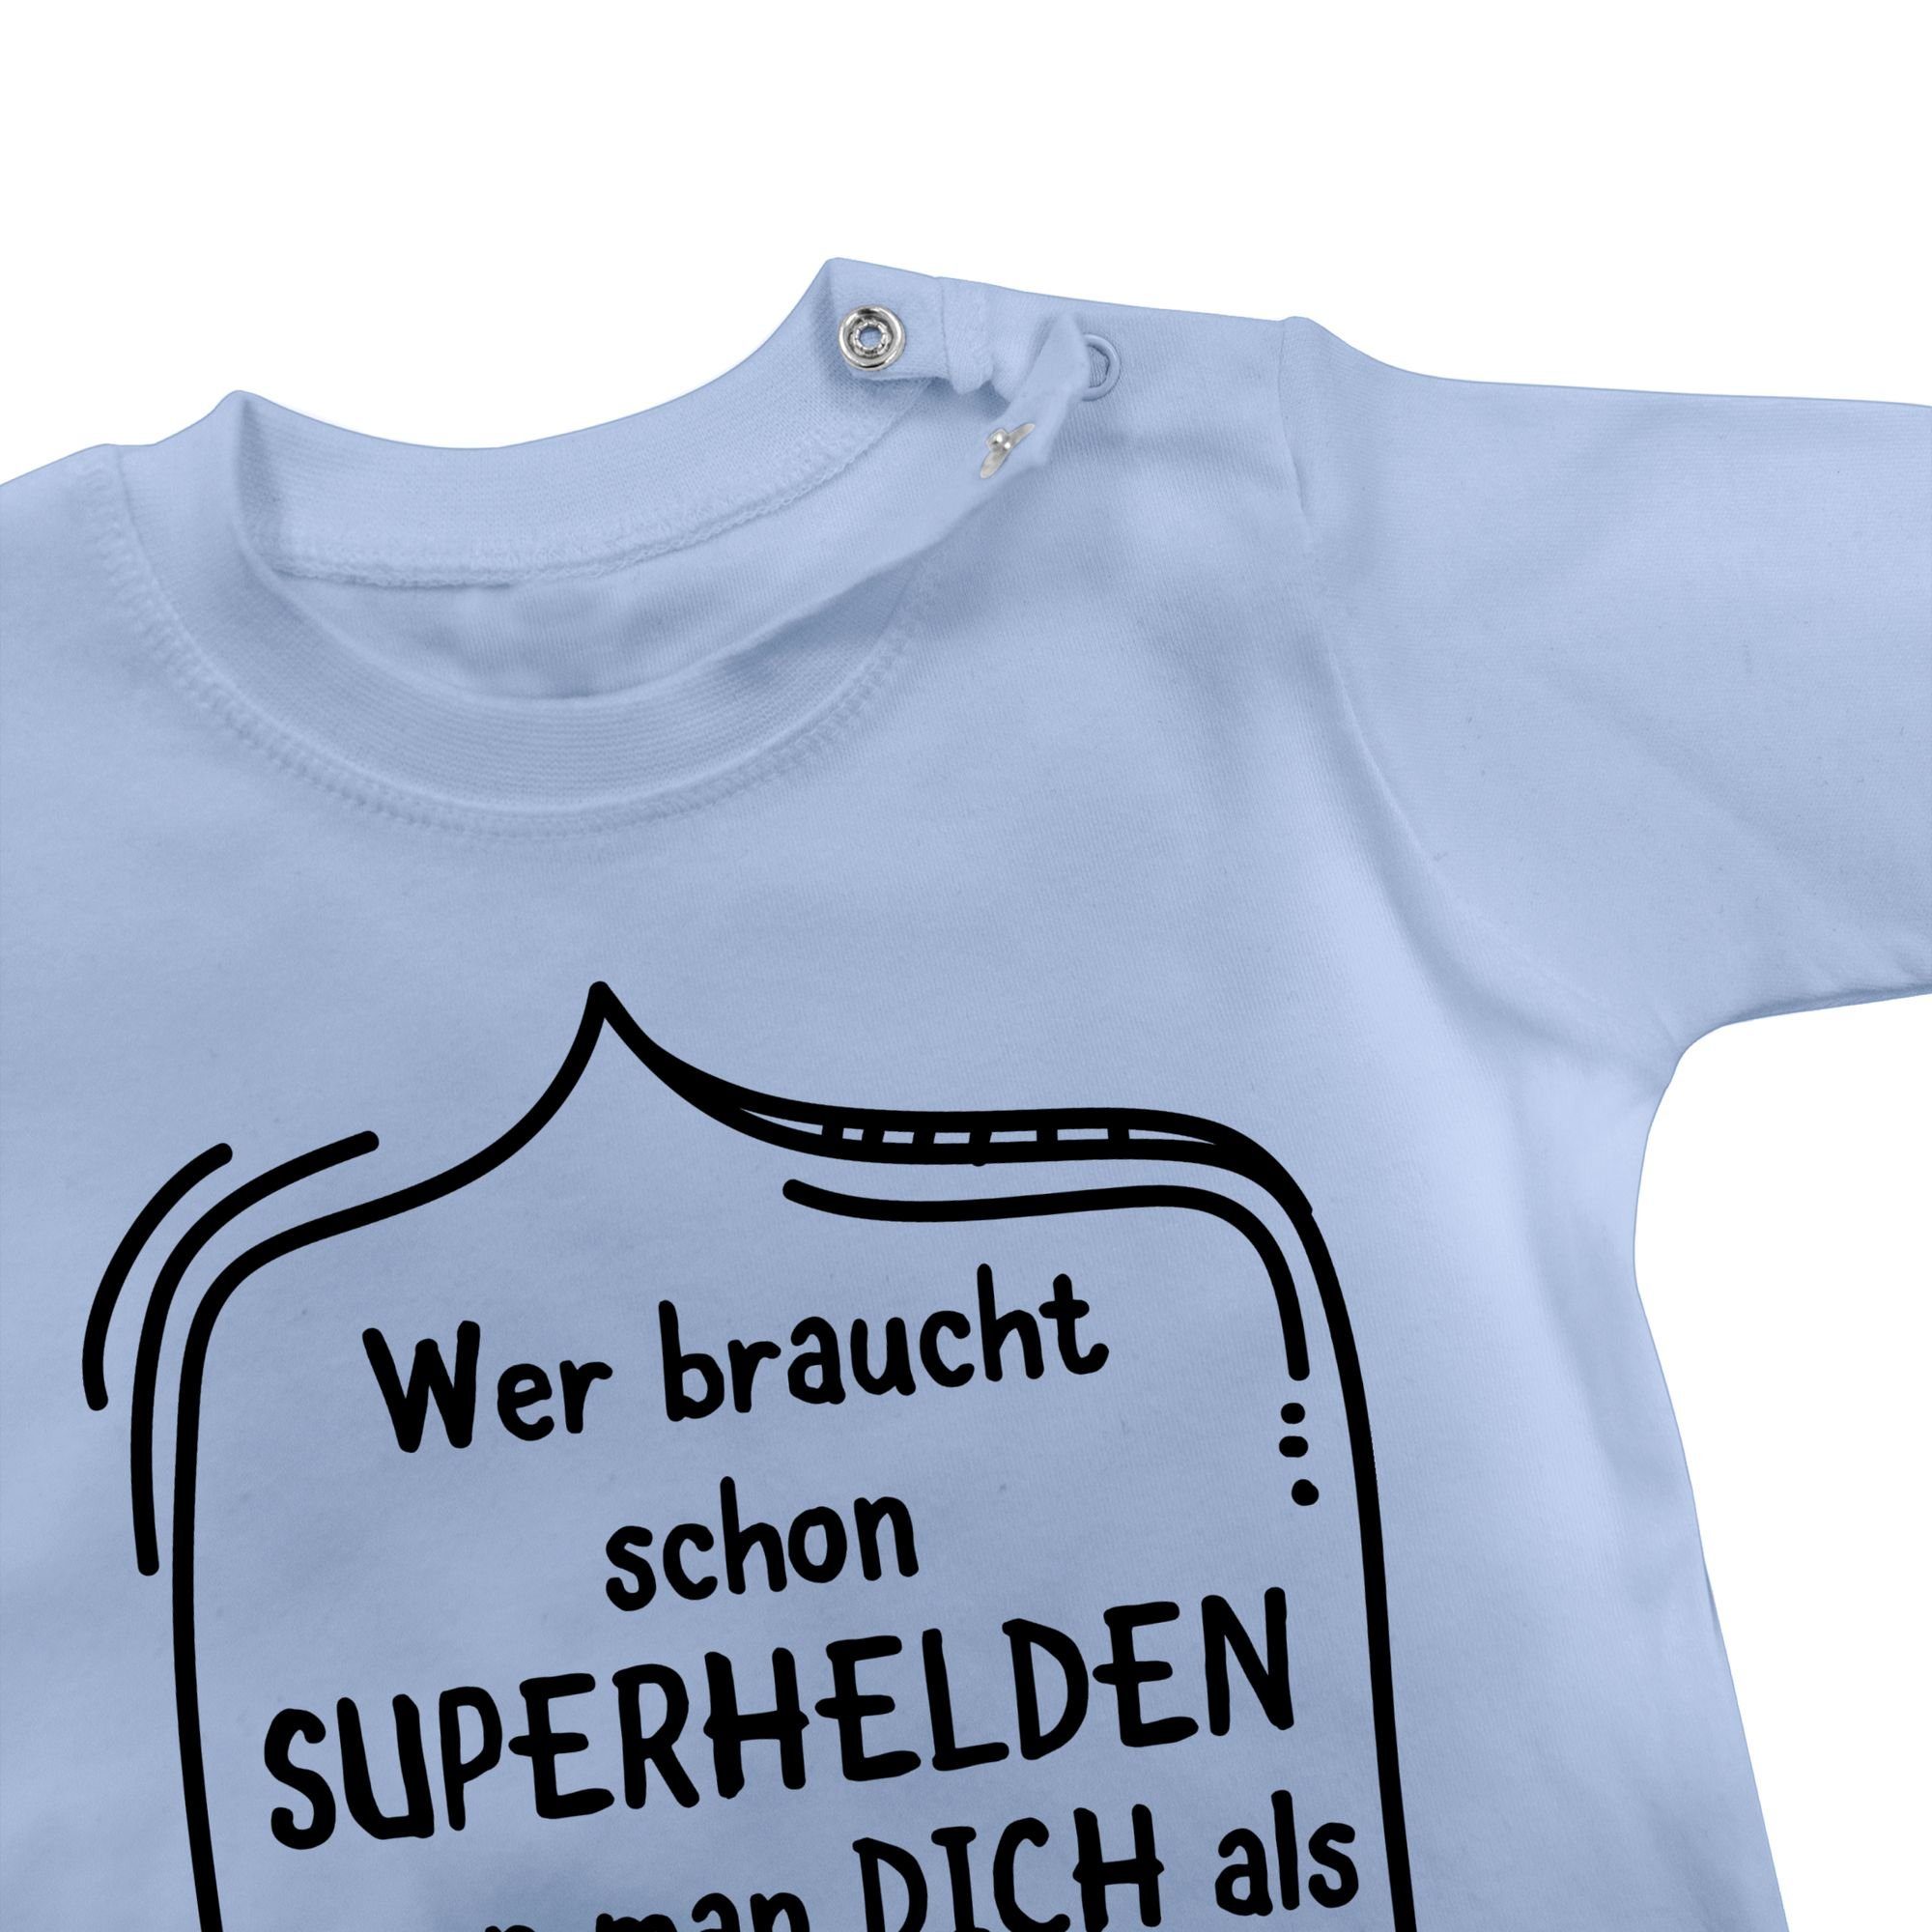 2 dich Superhelden man hat schon Baby Shirtracer T-Shirt als Wer Vatertag Babyblau braucht wenn Papa Geschenk